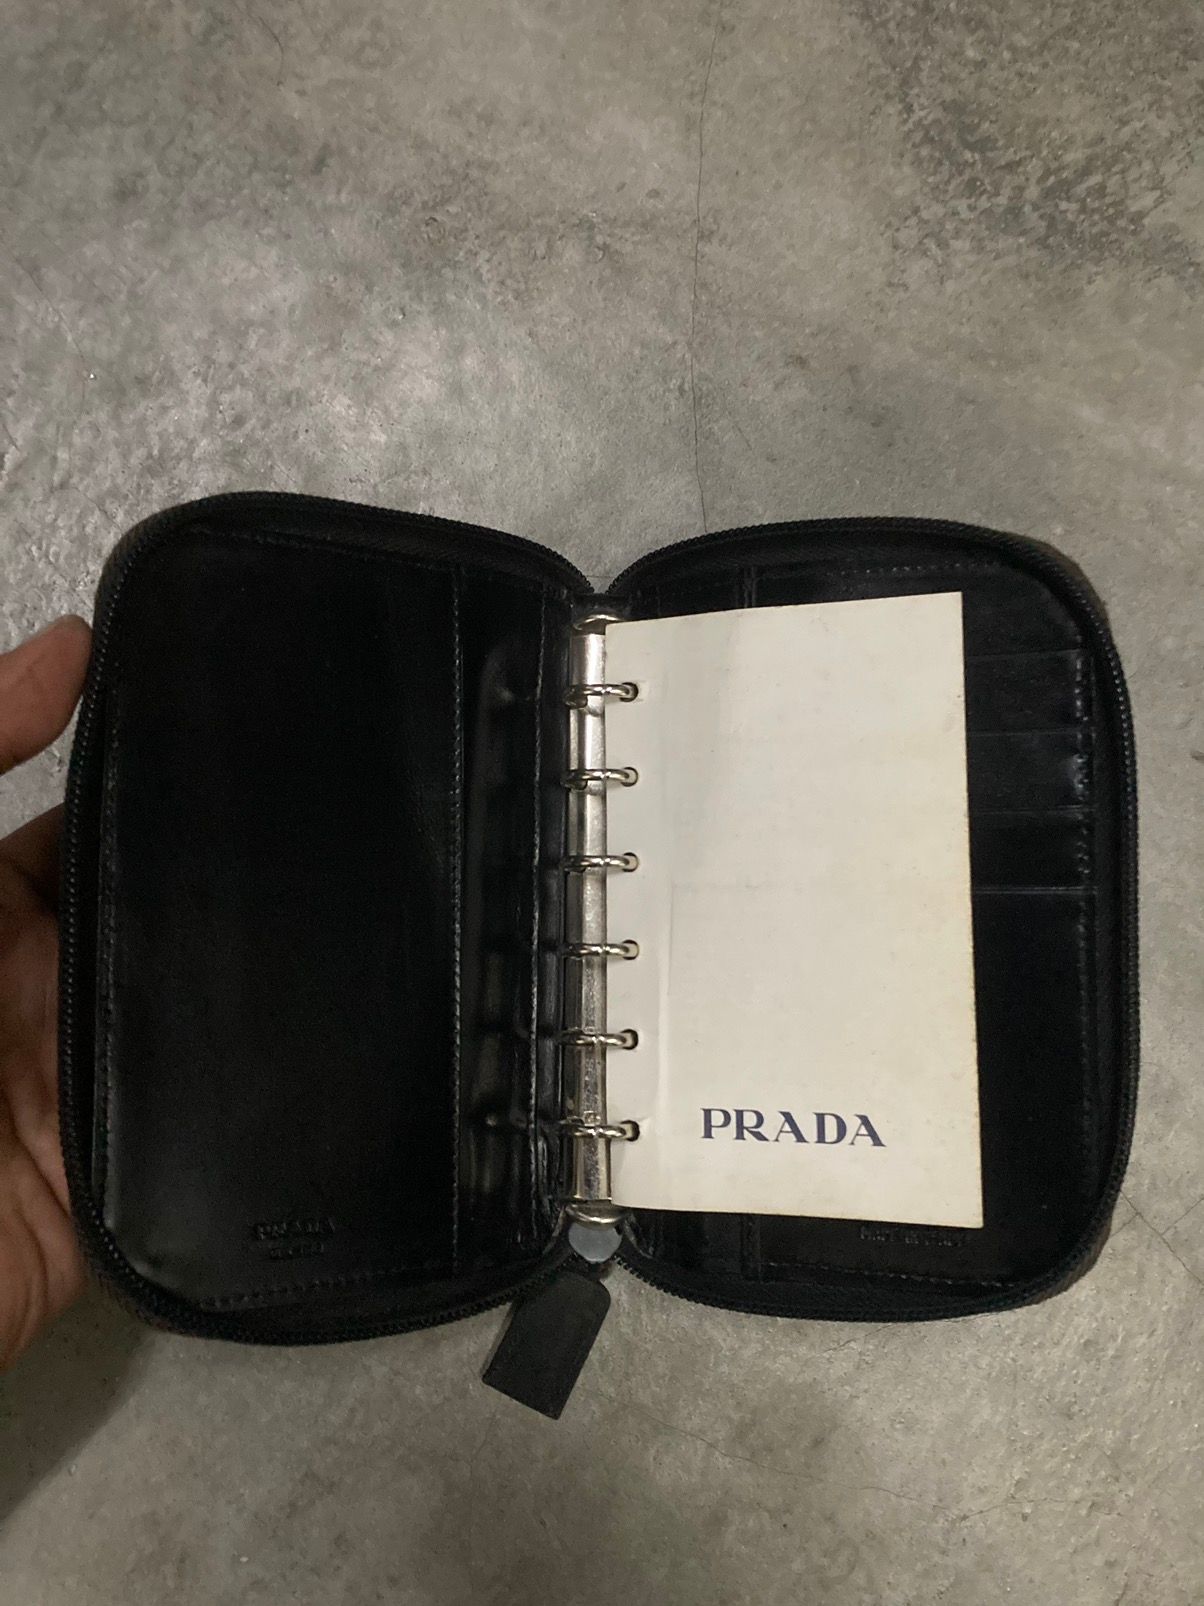 Authentic Prada Agenda Zipper Cover - 6